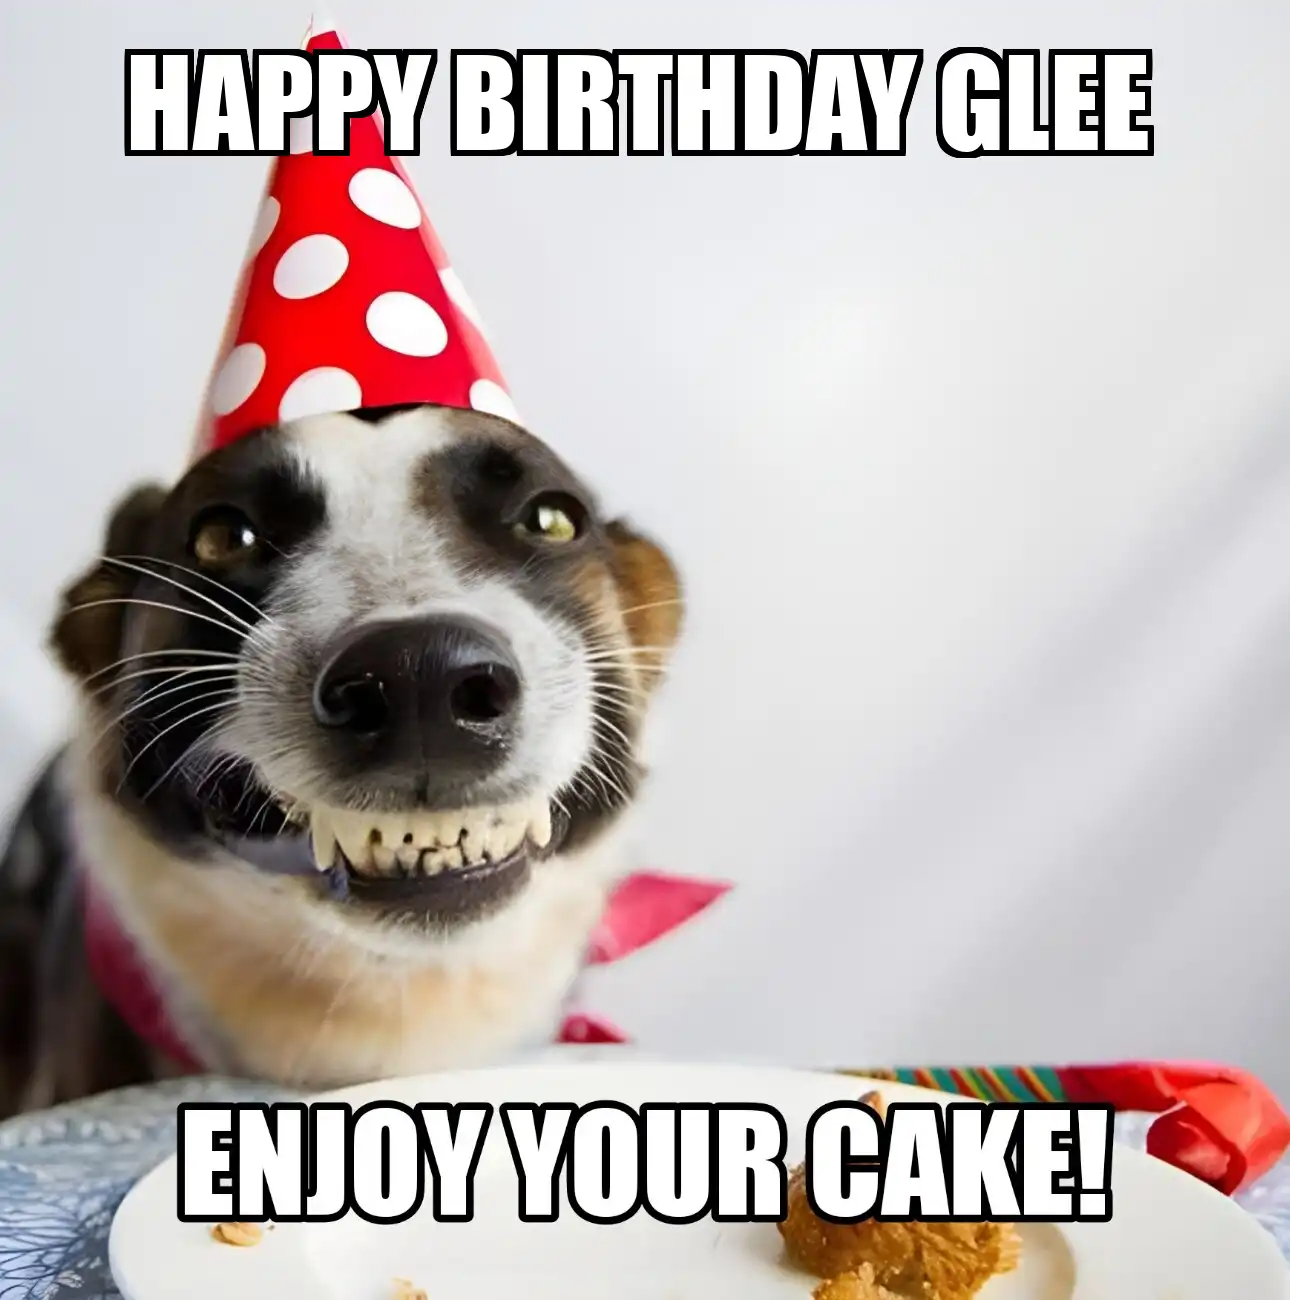 Happy Birthday Glee Enjoy Your Cake Dog Meme